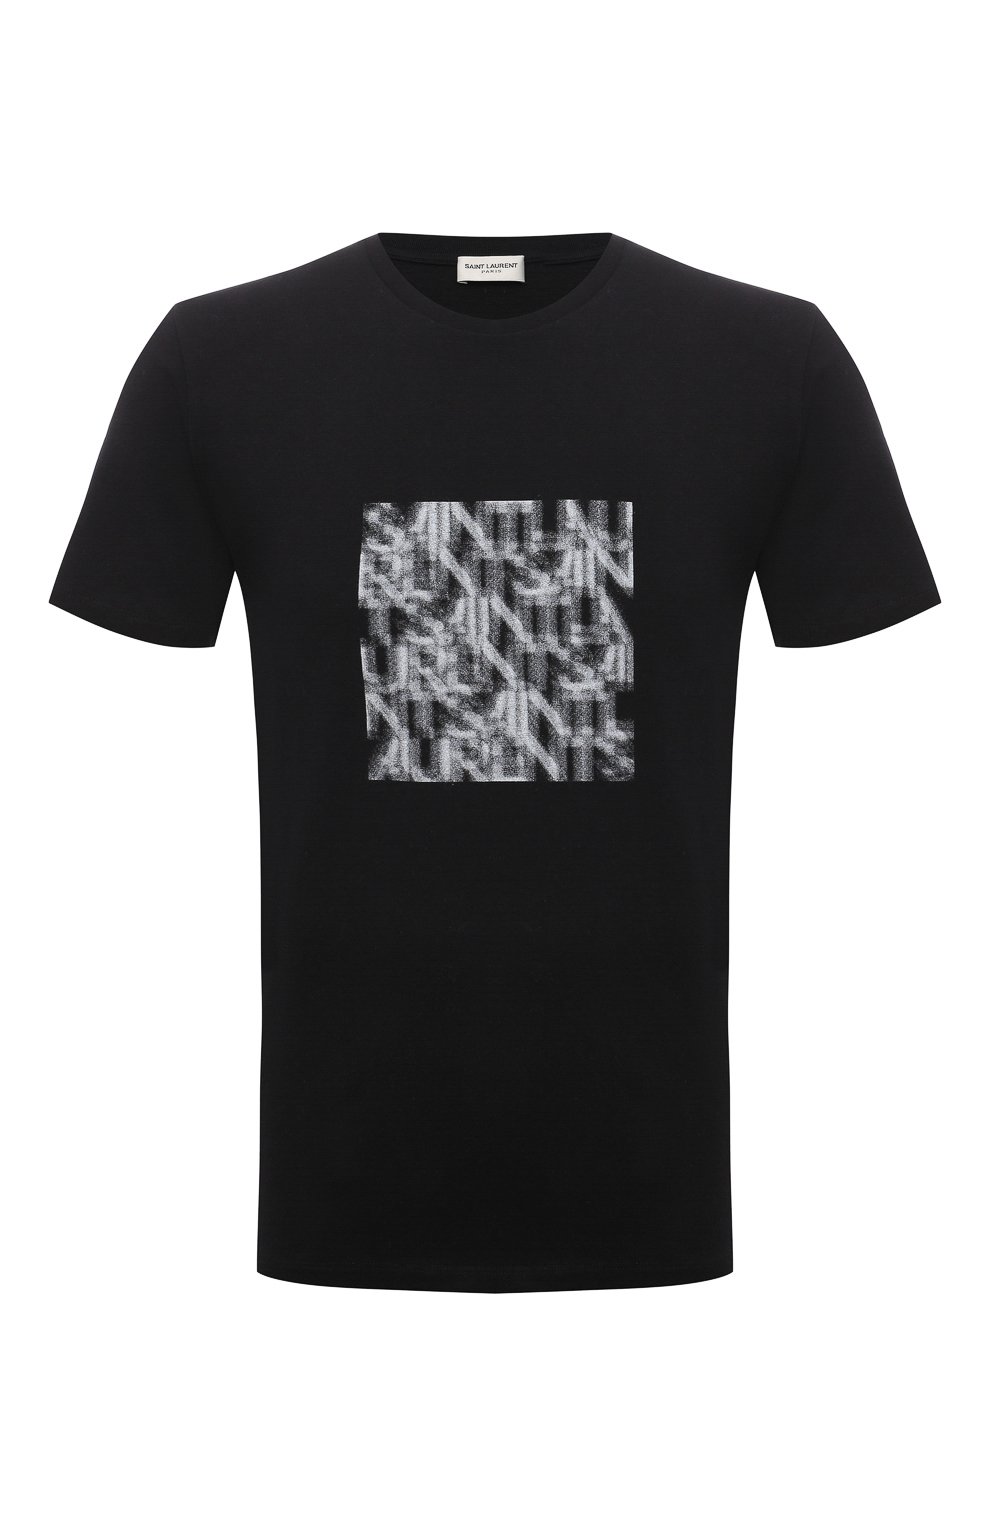 Футболки Saint Laurent, Хлопковая футболка Saint Laurent, Франция, Чёрный, Хлопок: 100%;, 12209951  - купить